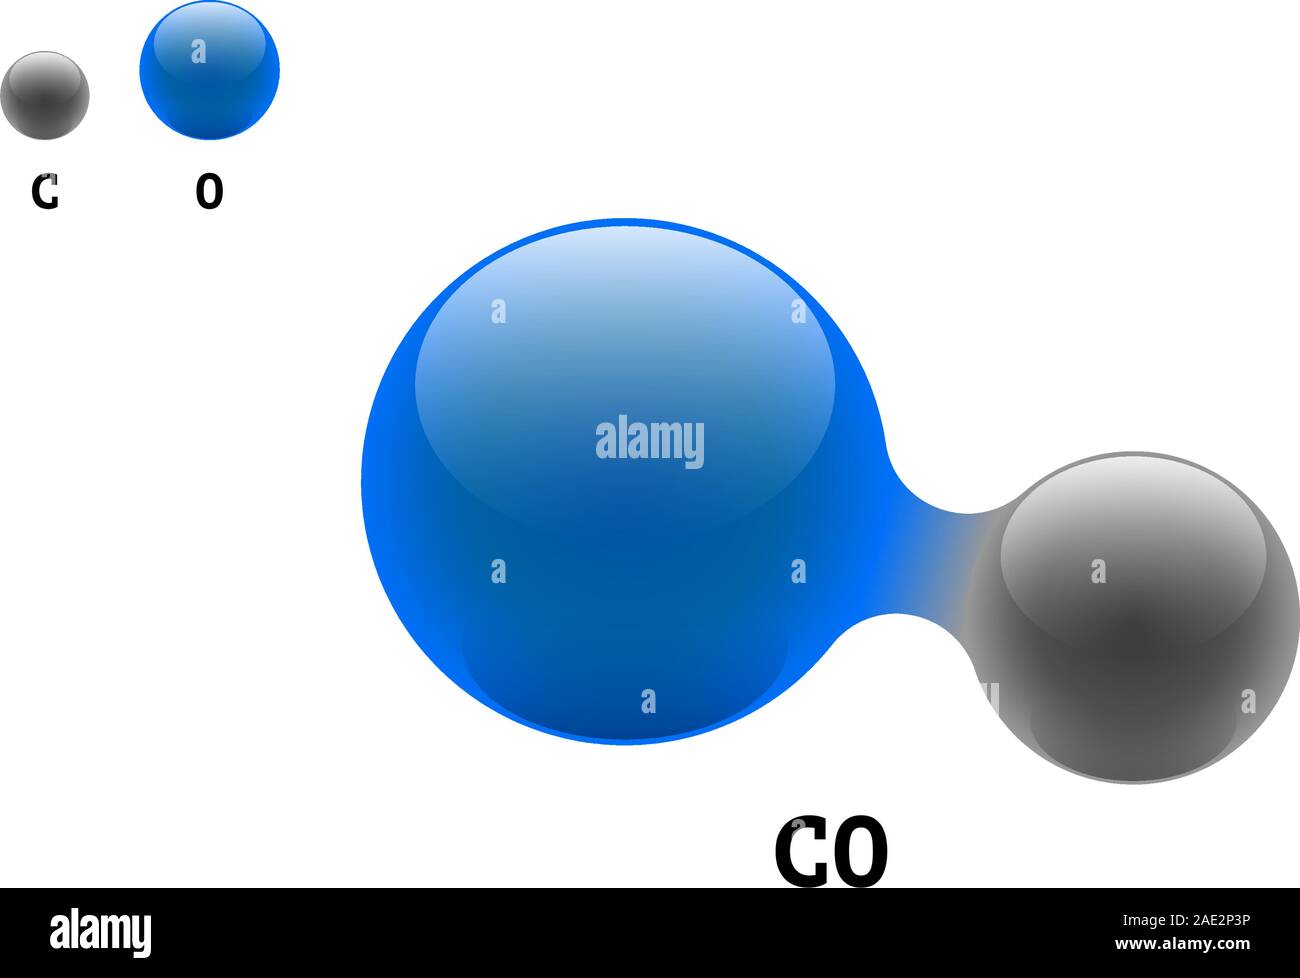 Modèle de chimie molécule monoxyde de carbone CO formule d'éléments scientifiques. Particules intégrées structure moléculaire 3d inorganique naturelle composée. Deux sphères vectorielles d'atome de carbone et d'oxygène Illustration de Vecteur